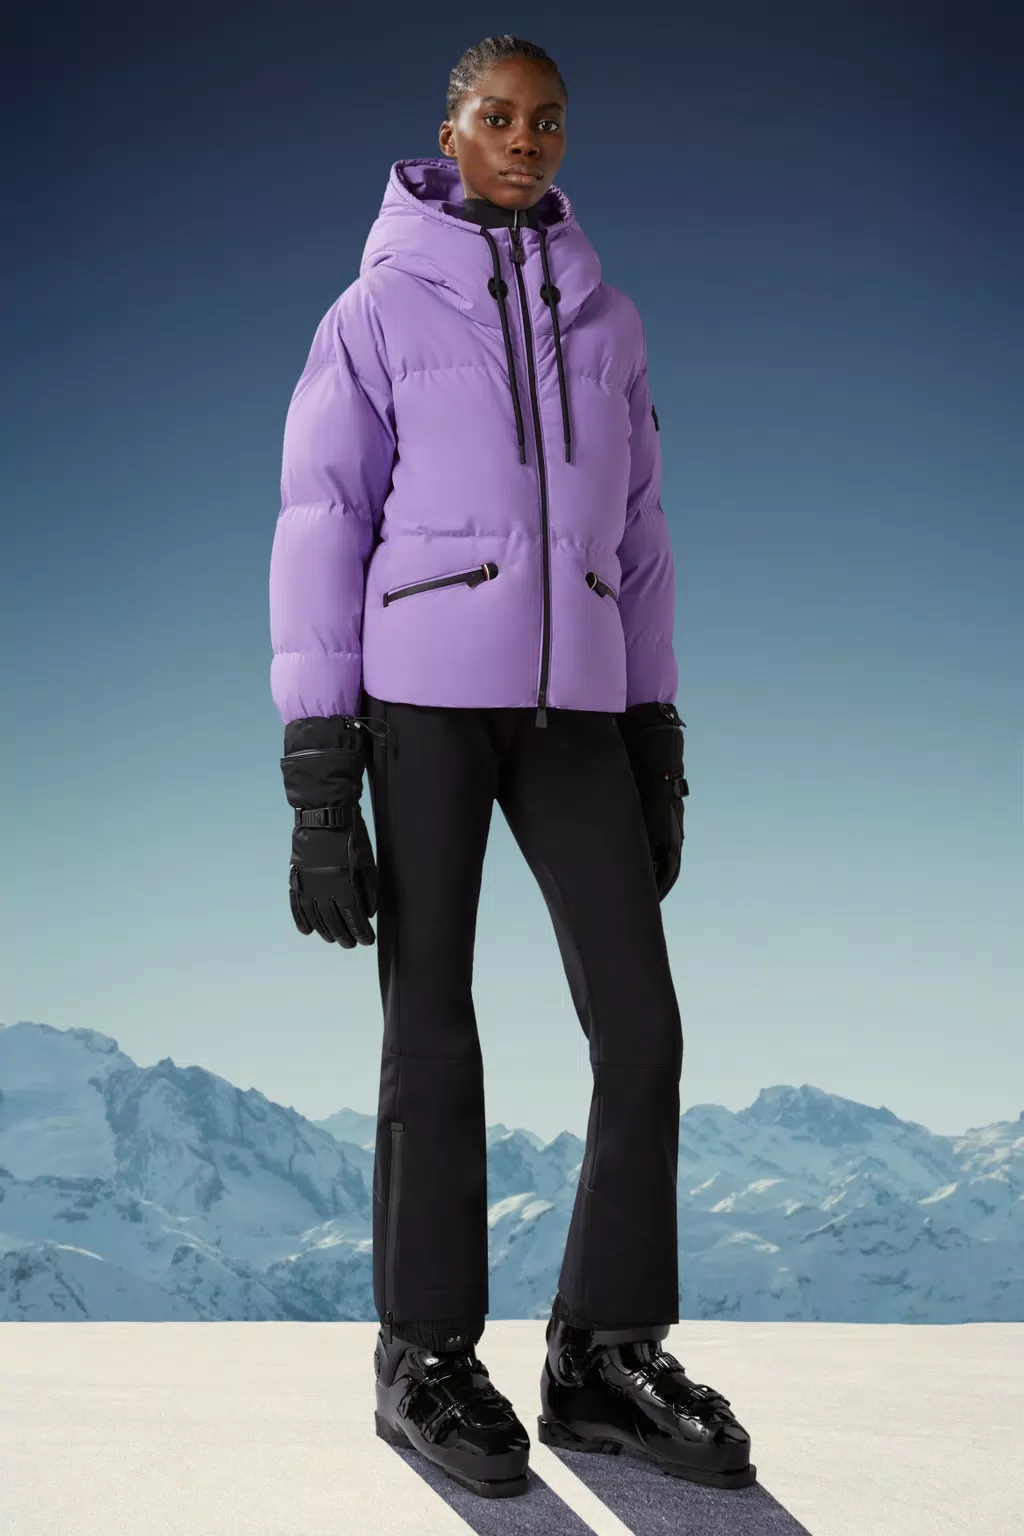 Pantalones Esquí - Tienda online de pantalones de esquí